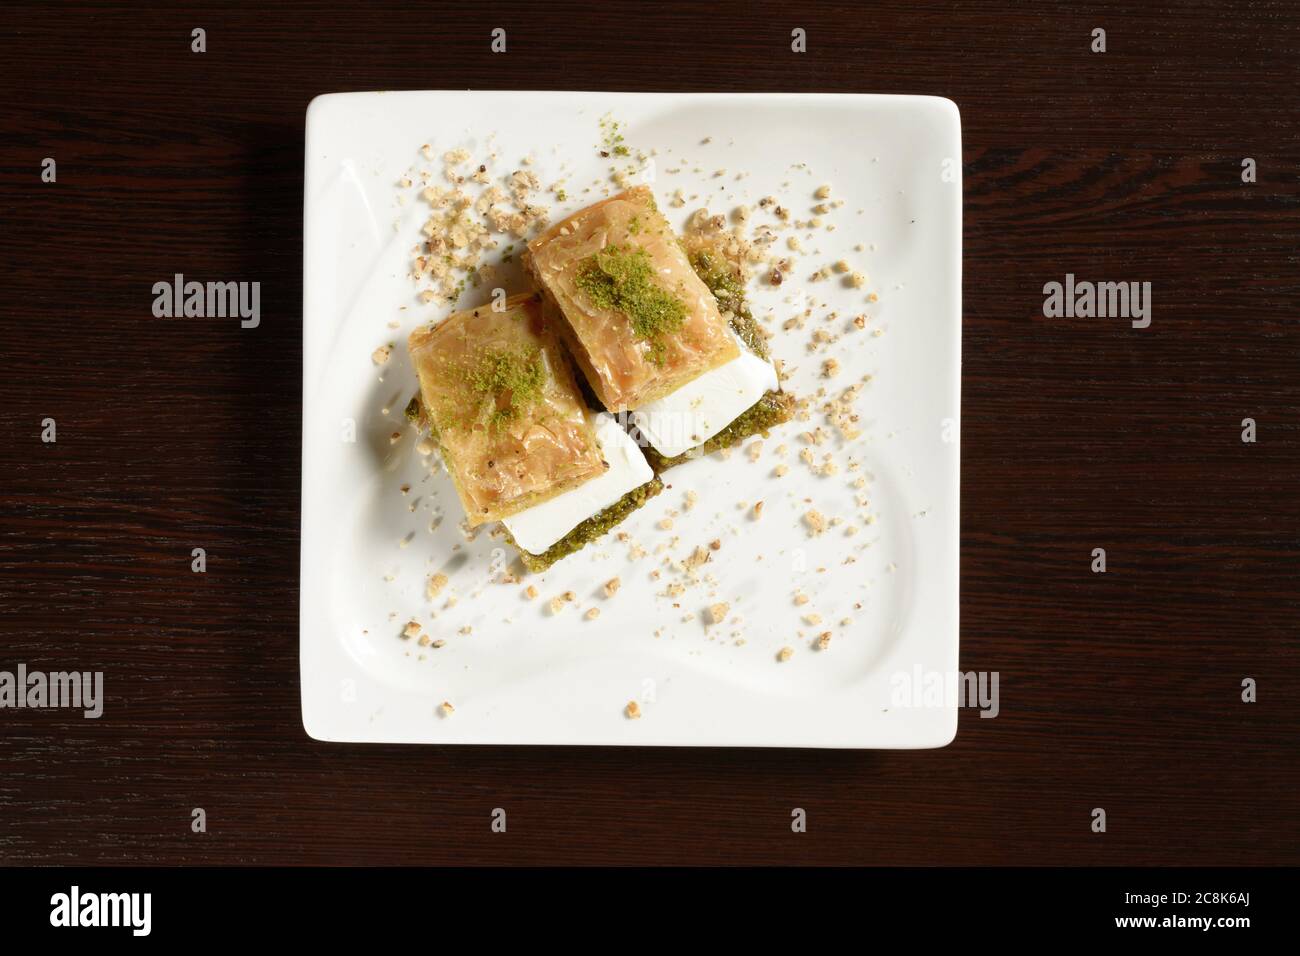 Türkische Blätterbaklava mit Eis auf quadratischen Tellern, Draufsicht. Türkische Süße. Fotos für Restaurant- und Cafe-Menüs Stockfoto